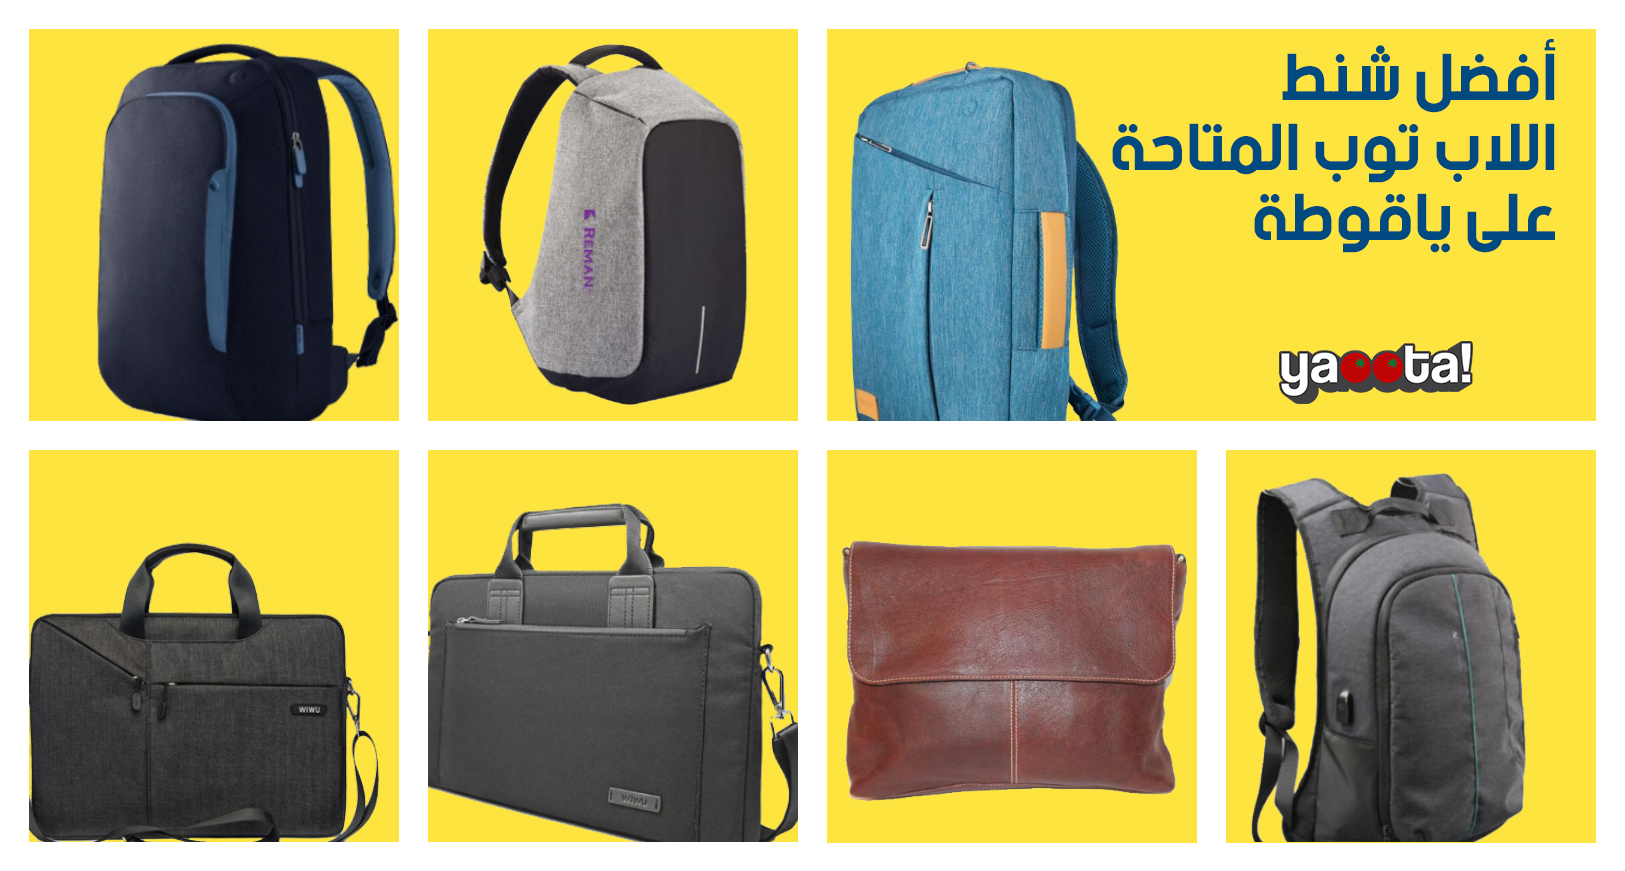 اتعرف على أبرز شنط اللابتوب المختلفة والمتنوعة المتوفرة على ياقوطةOnline  Shopping Egypt | Yaoota! Magazine